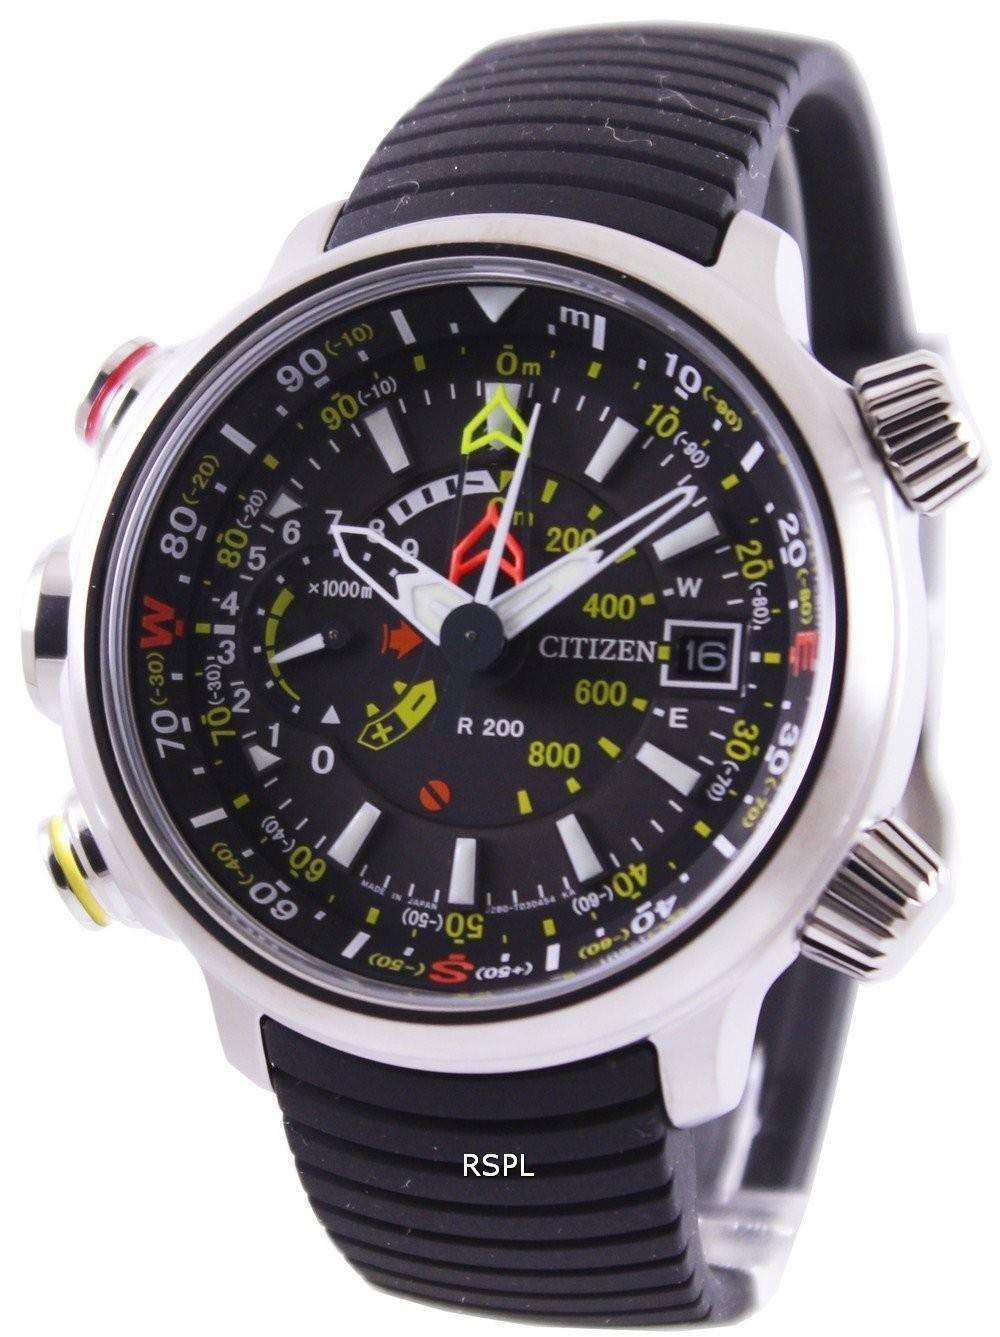 シチズンエコ ドライブ Altichron プロマスター BN4021 02E メンズ腕時計